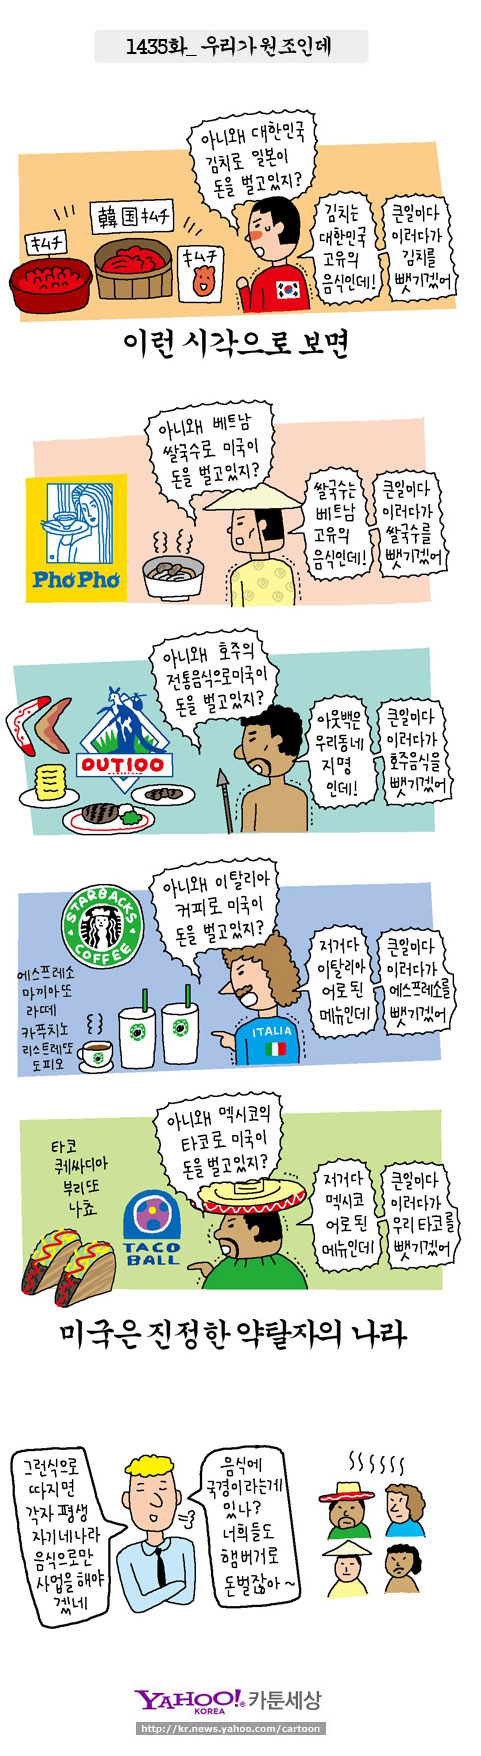 写真＝韓国のウェブ漫画家ユン・ソインのウェブ漫画。